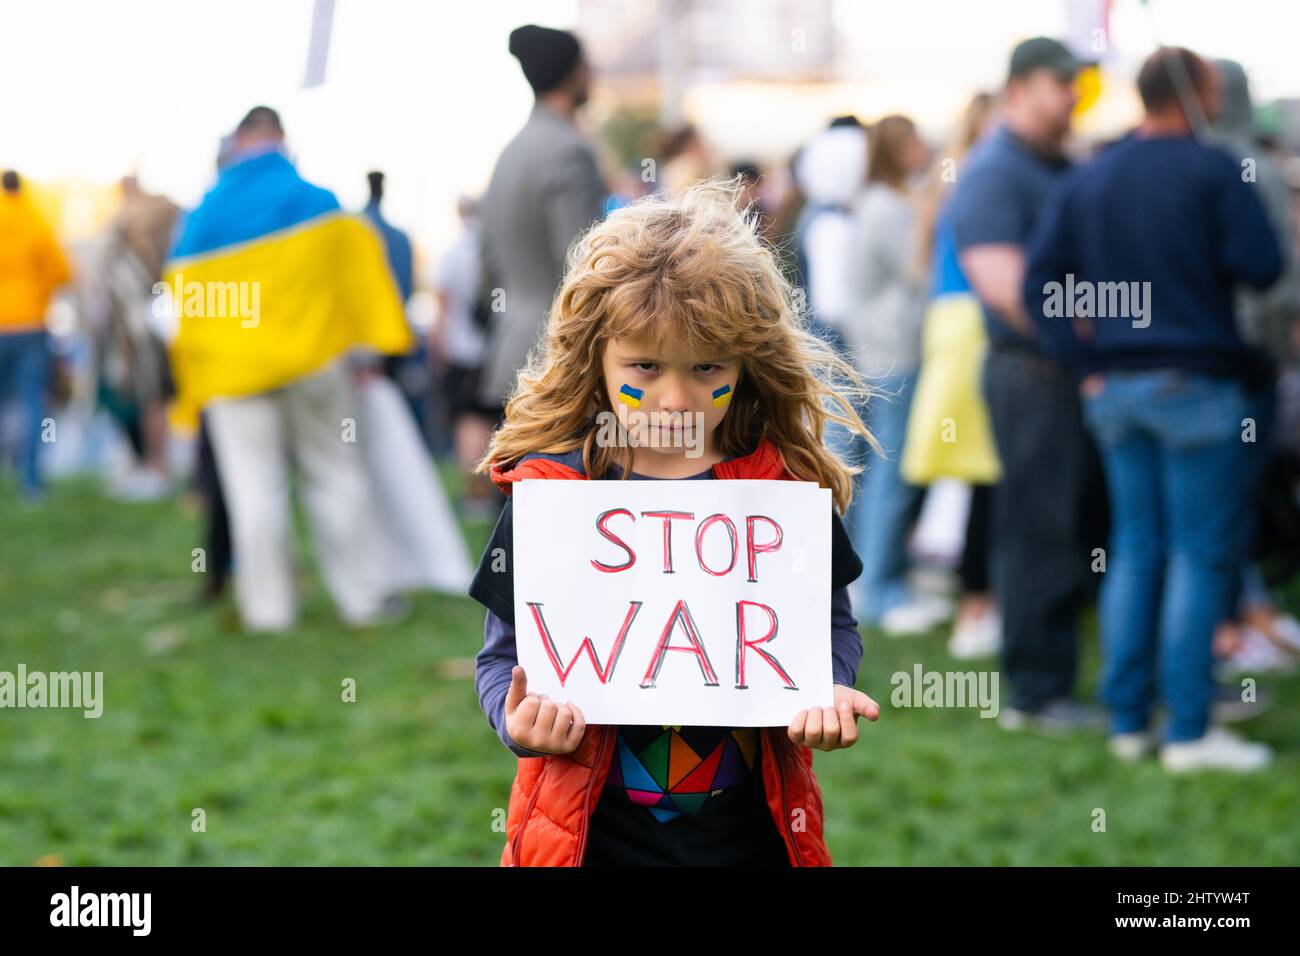 Niño joven sosteniendo un cartel con mensaje de Stop war, activismo y movimiento de derechos humanos, estilo de vida al aire libre. El niño lleva una señal de Parar la guerra. Ruso Foto de stock